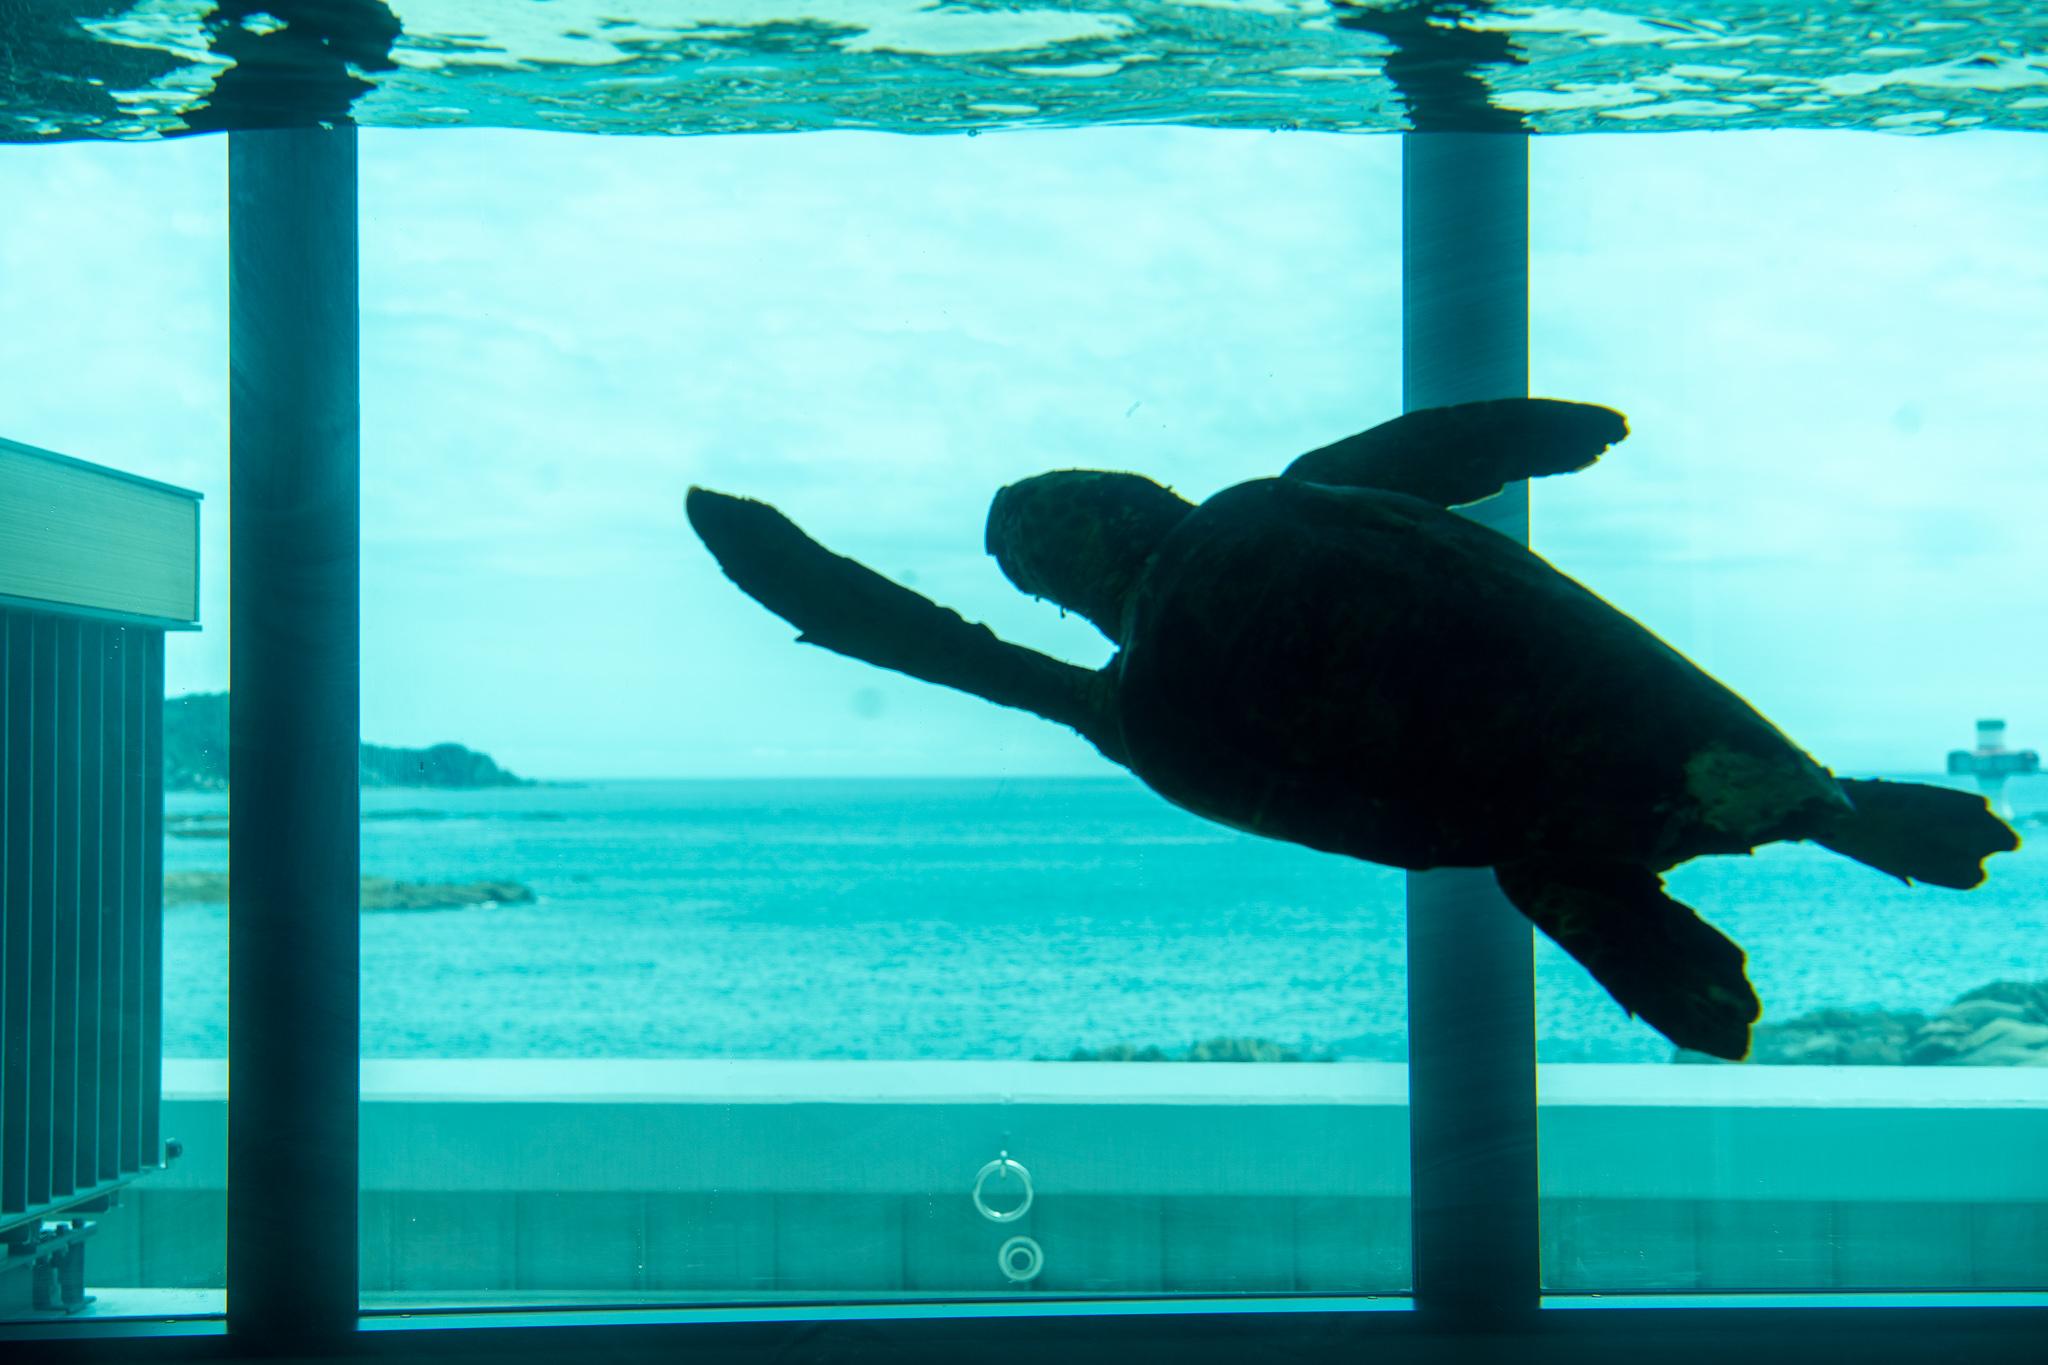 以太平洋為背景的海龜悠遊水缸